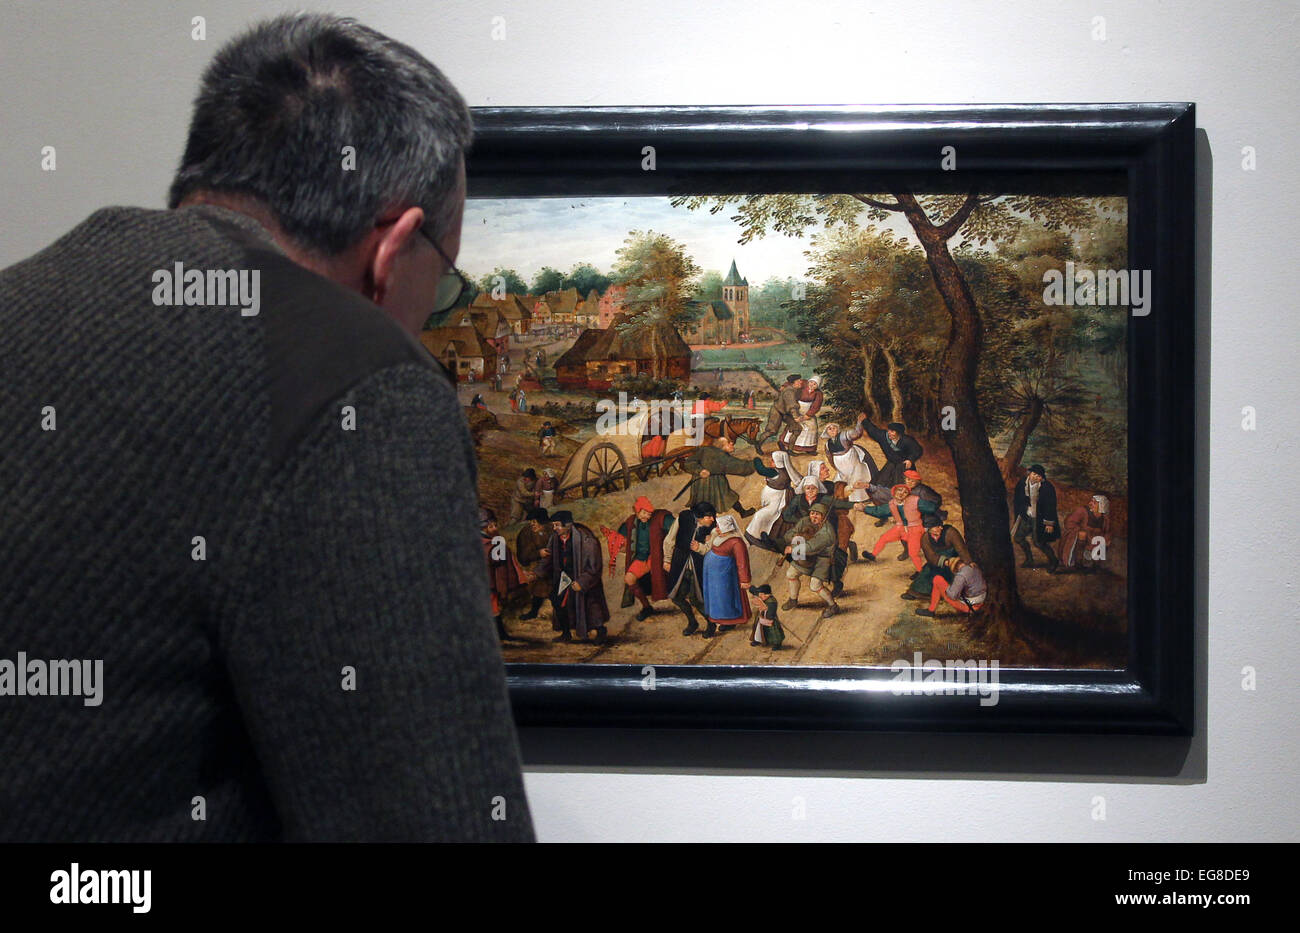 Paderborn, Deutschland. 19. Februar 2015. Ein Mensch bewundert ein Gemälde von Peter Brueghel der jüngere in der Ausstellung "sterben Brueghel-Familie" (The Brueghel Familie) in Paderborn, Deutschland, 19. Februar 2015. Foto: INA FASSBENDER/Dpa/Alamy Live News Stockfoto